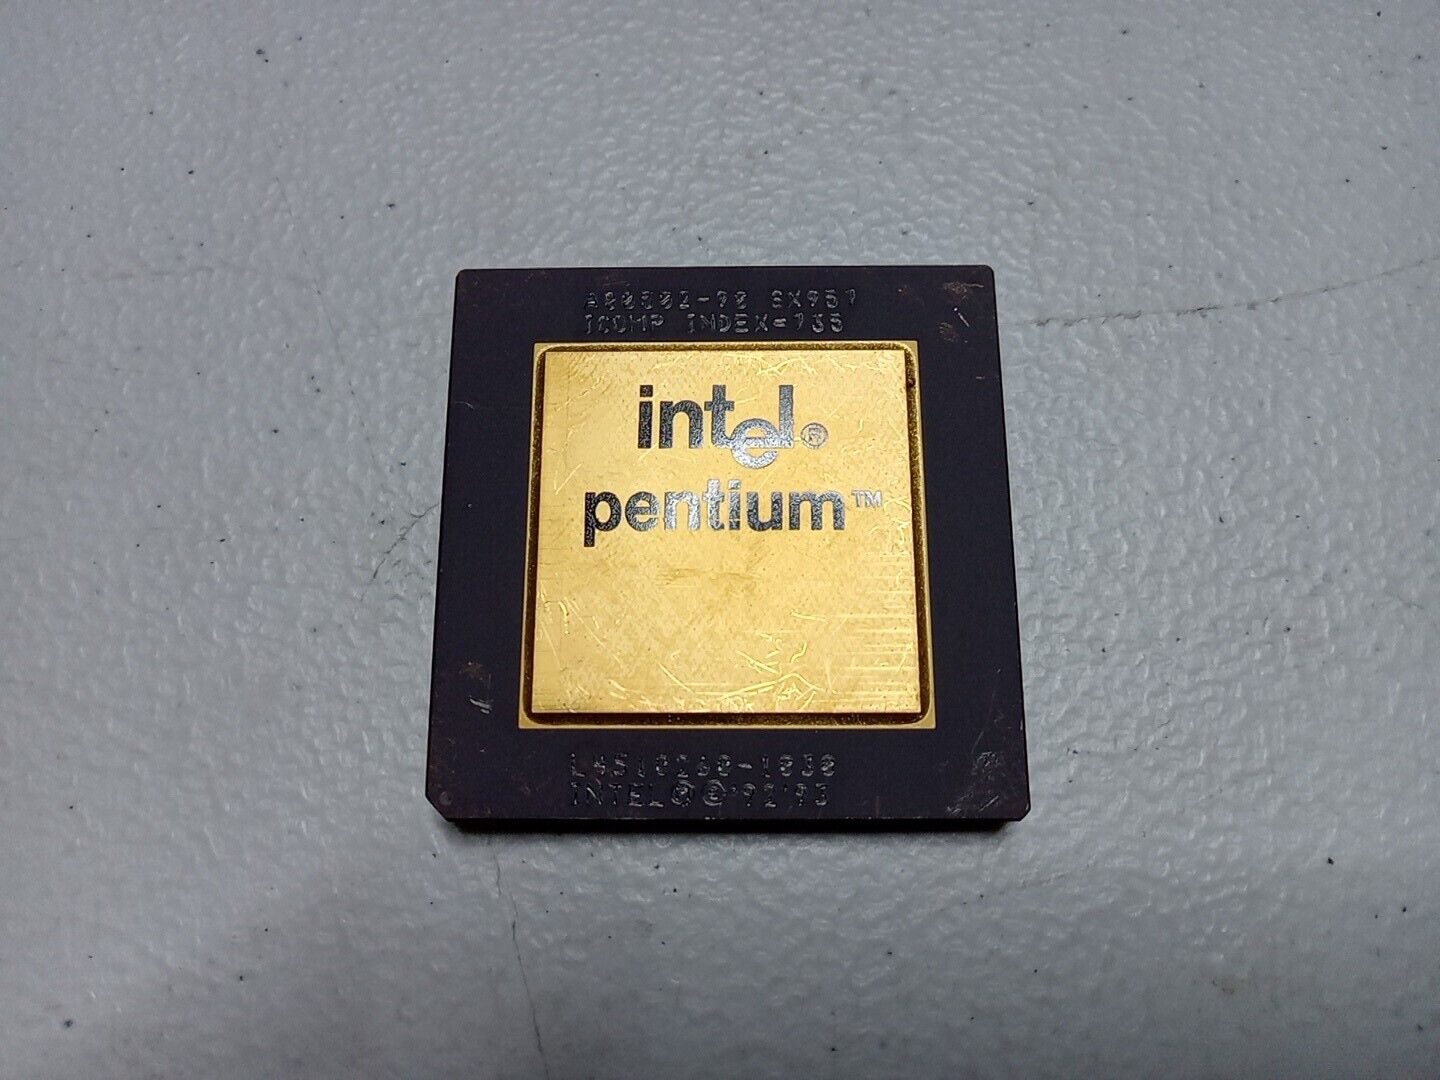 Intel Pentium GOLD TOP SX957 PROCESSOR CPU SOCKET 7 Vintage A80502-90 